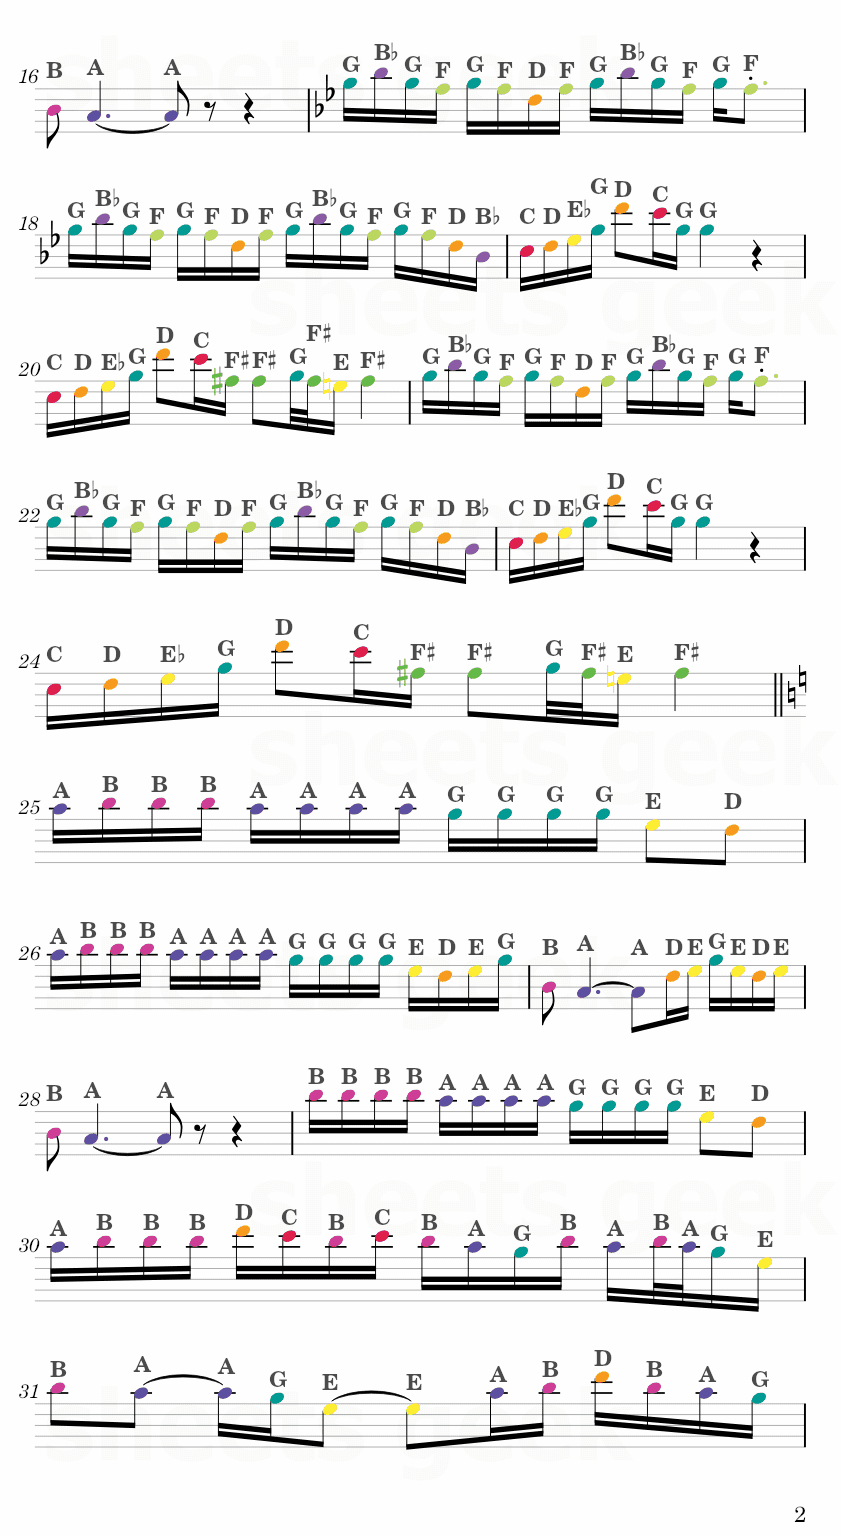 Shinunoga E-Wa - Fujii Kaze Easy Sheet Music Free for piano, keyboard, flute, violin, sax, cello page 2